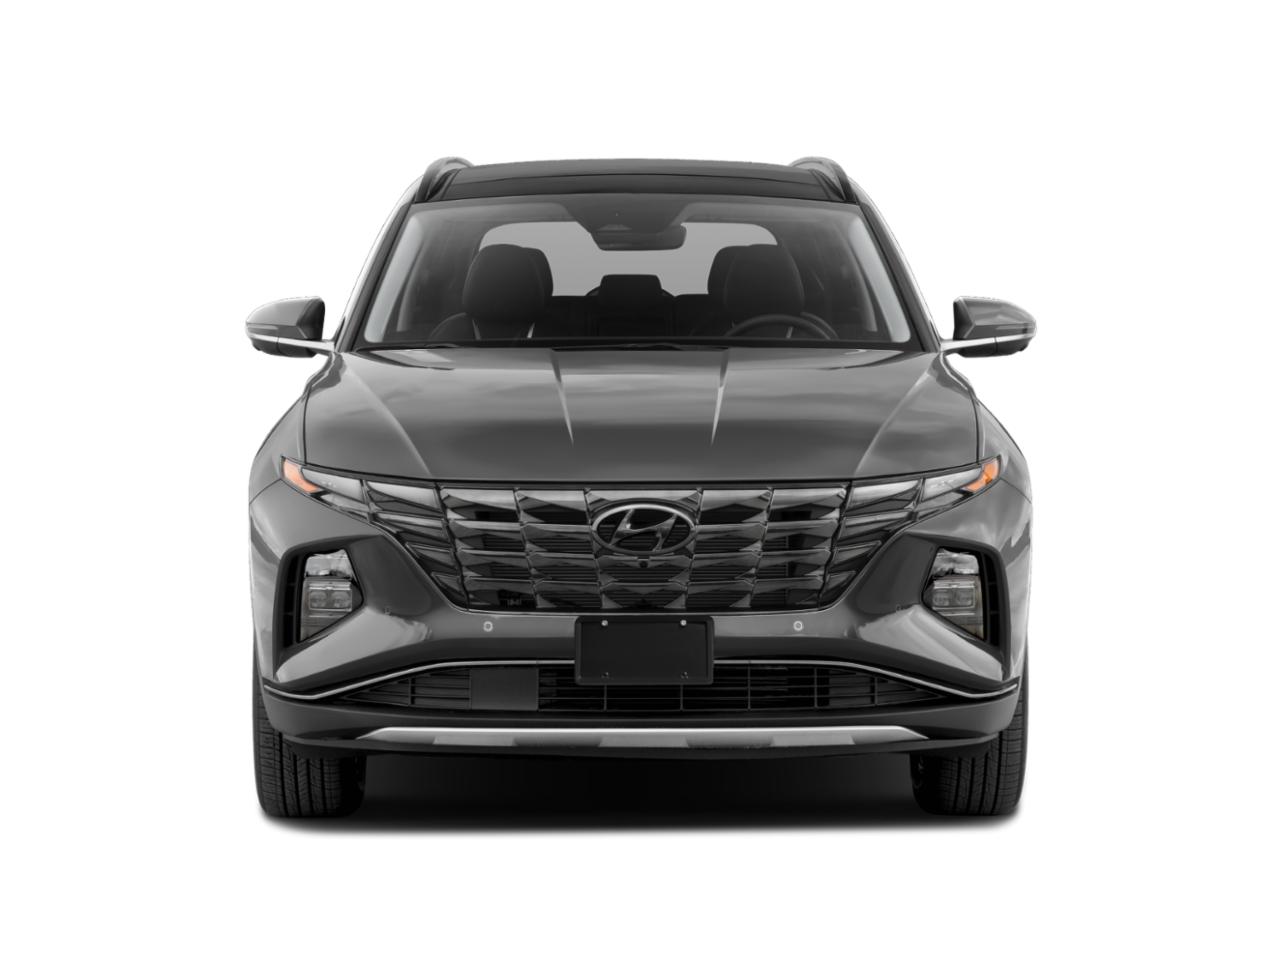 2024 Hyundai TUCSON Limited FWD Gray Limited 4dr SUV. A Hyundai TUCSON